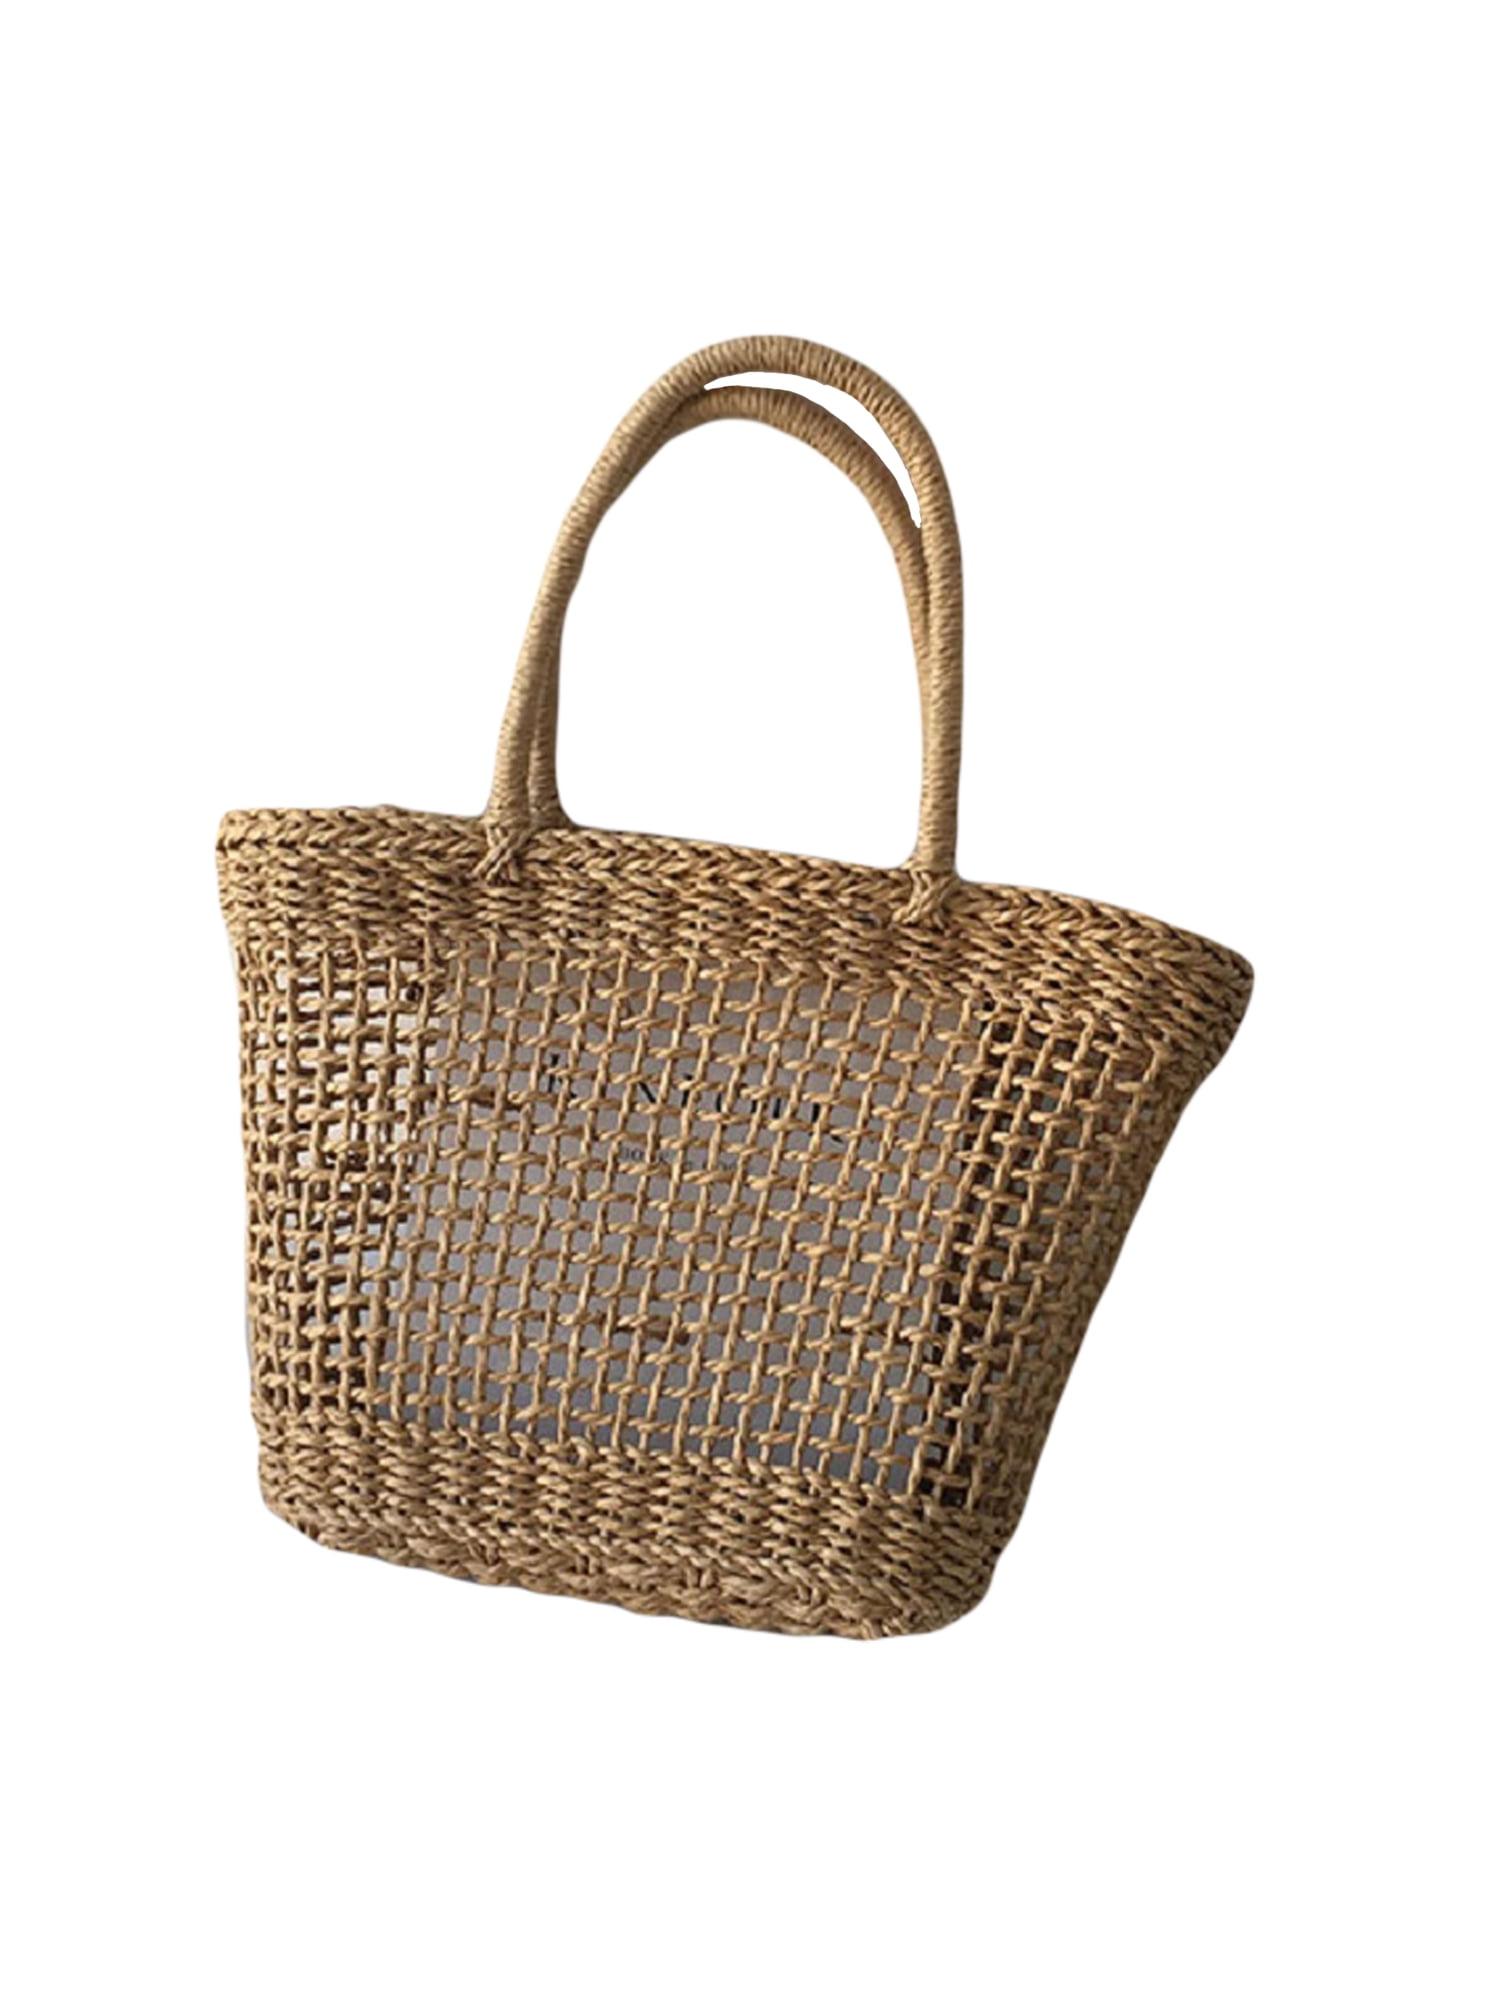 Purse/ Rattan and Wood Top Handle Bag/Vintage Cherry Straw Handbag